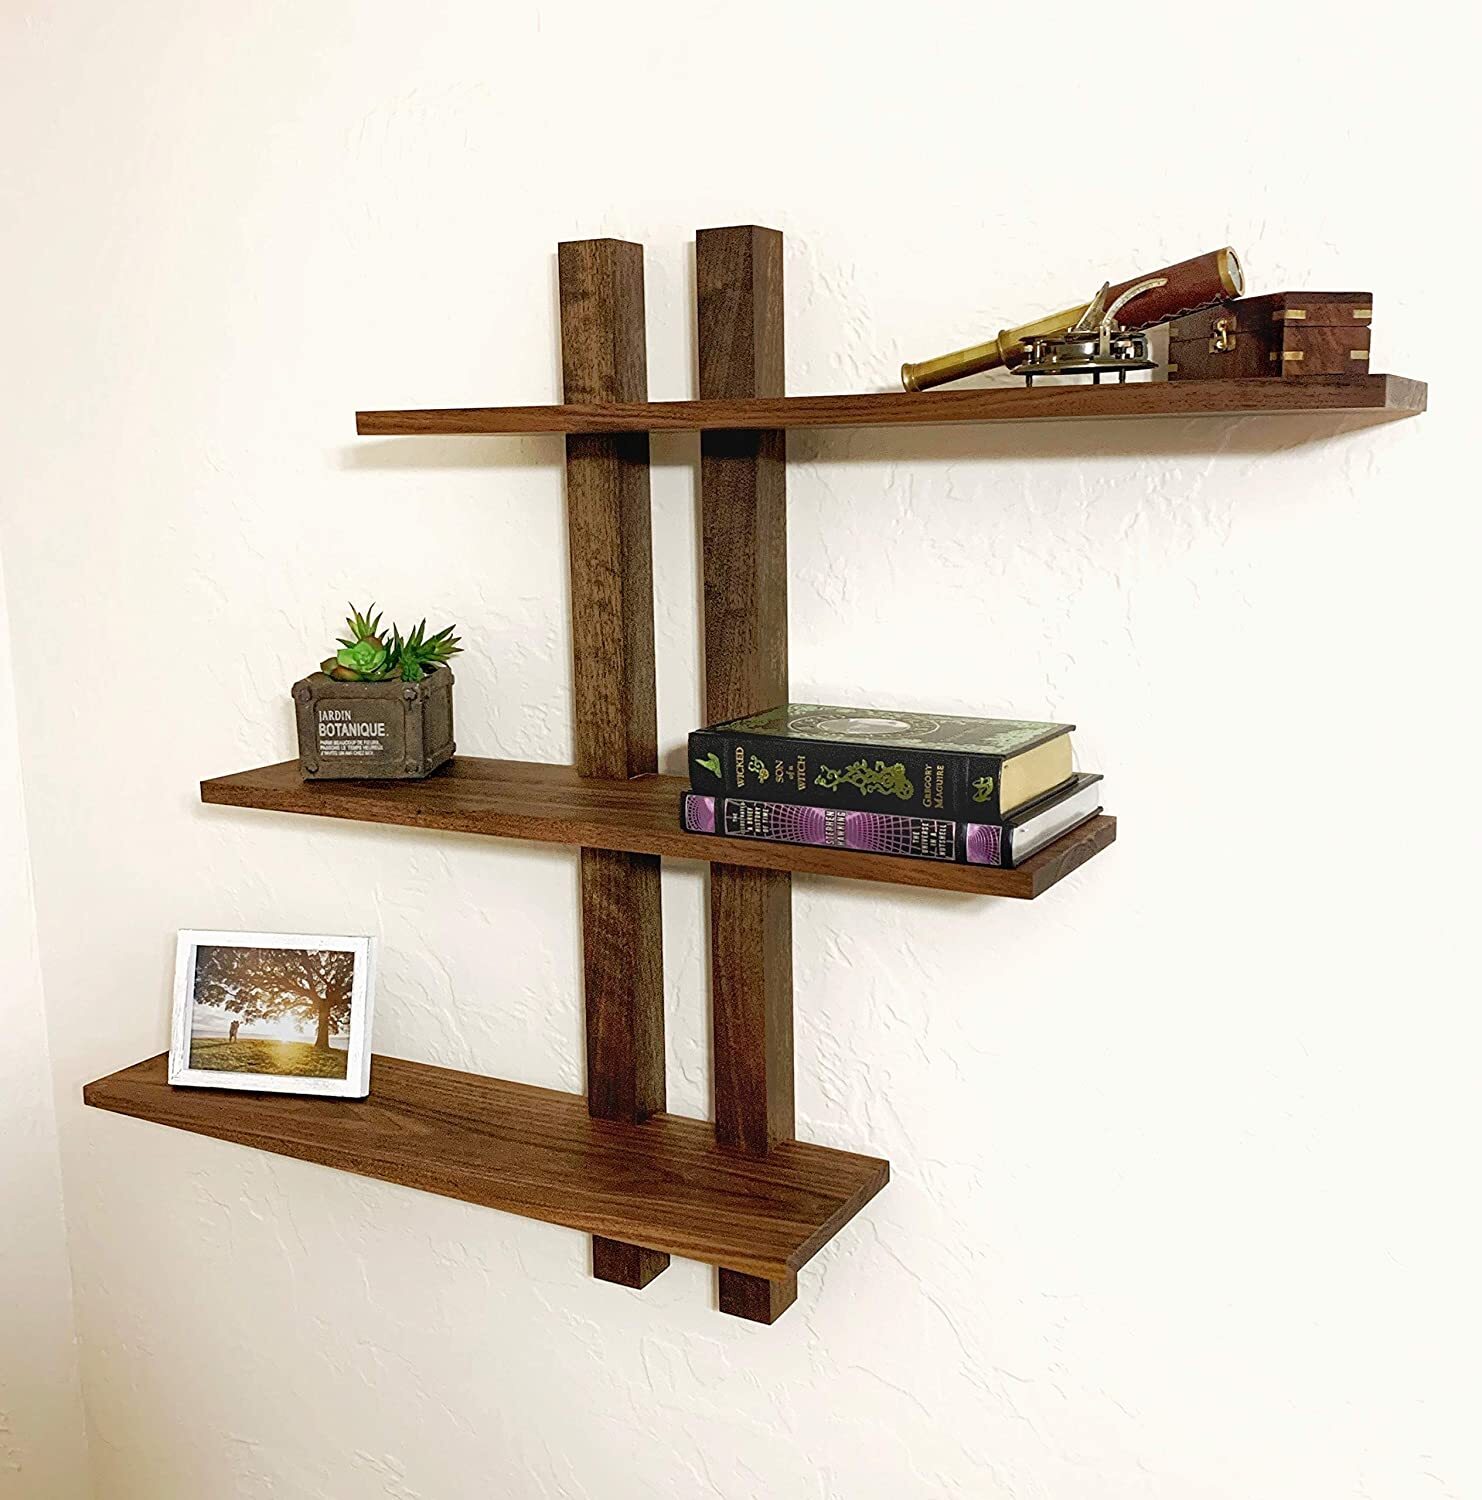 A mid century modern wooden shelf